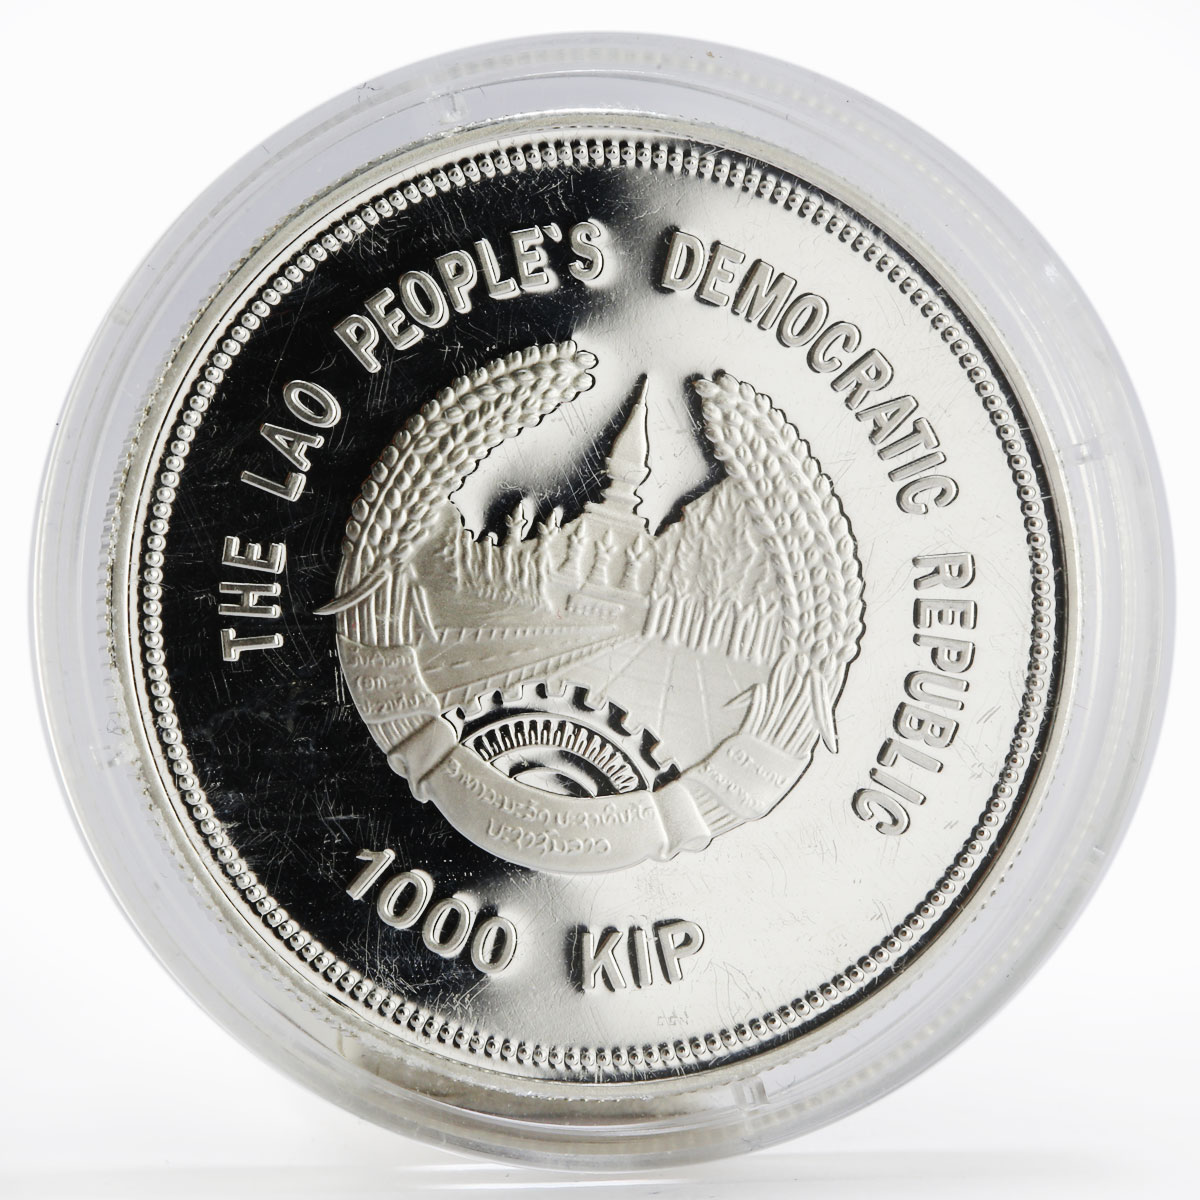 Laos 1000 kip Olympic Games Figure Skating Matryoshka silver proof coin 2014